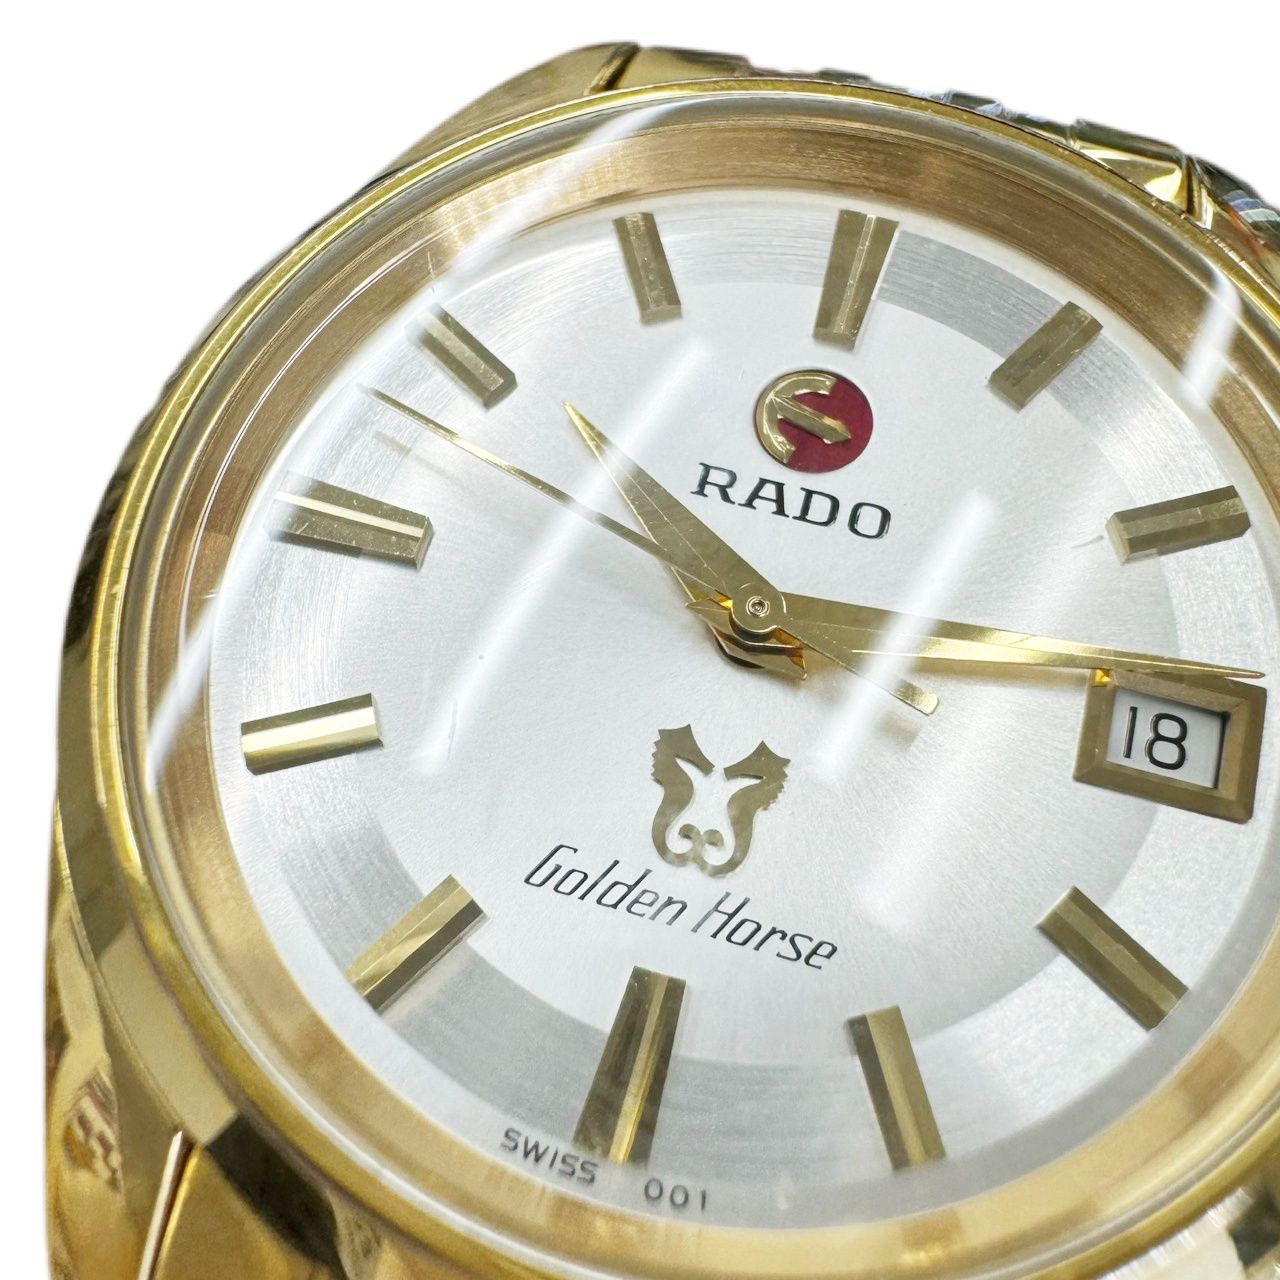 RADO ラドー ゴールデンホース デイト 自動巻き 腕時計 メンズ 純正SSコンビベルト 稼働品